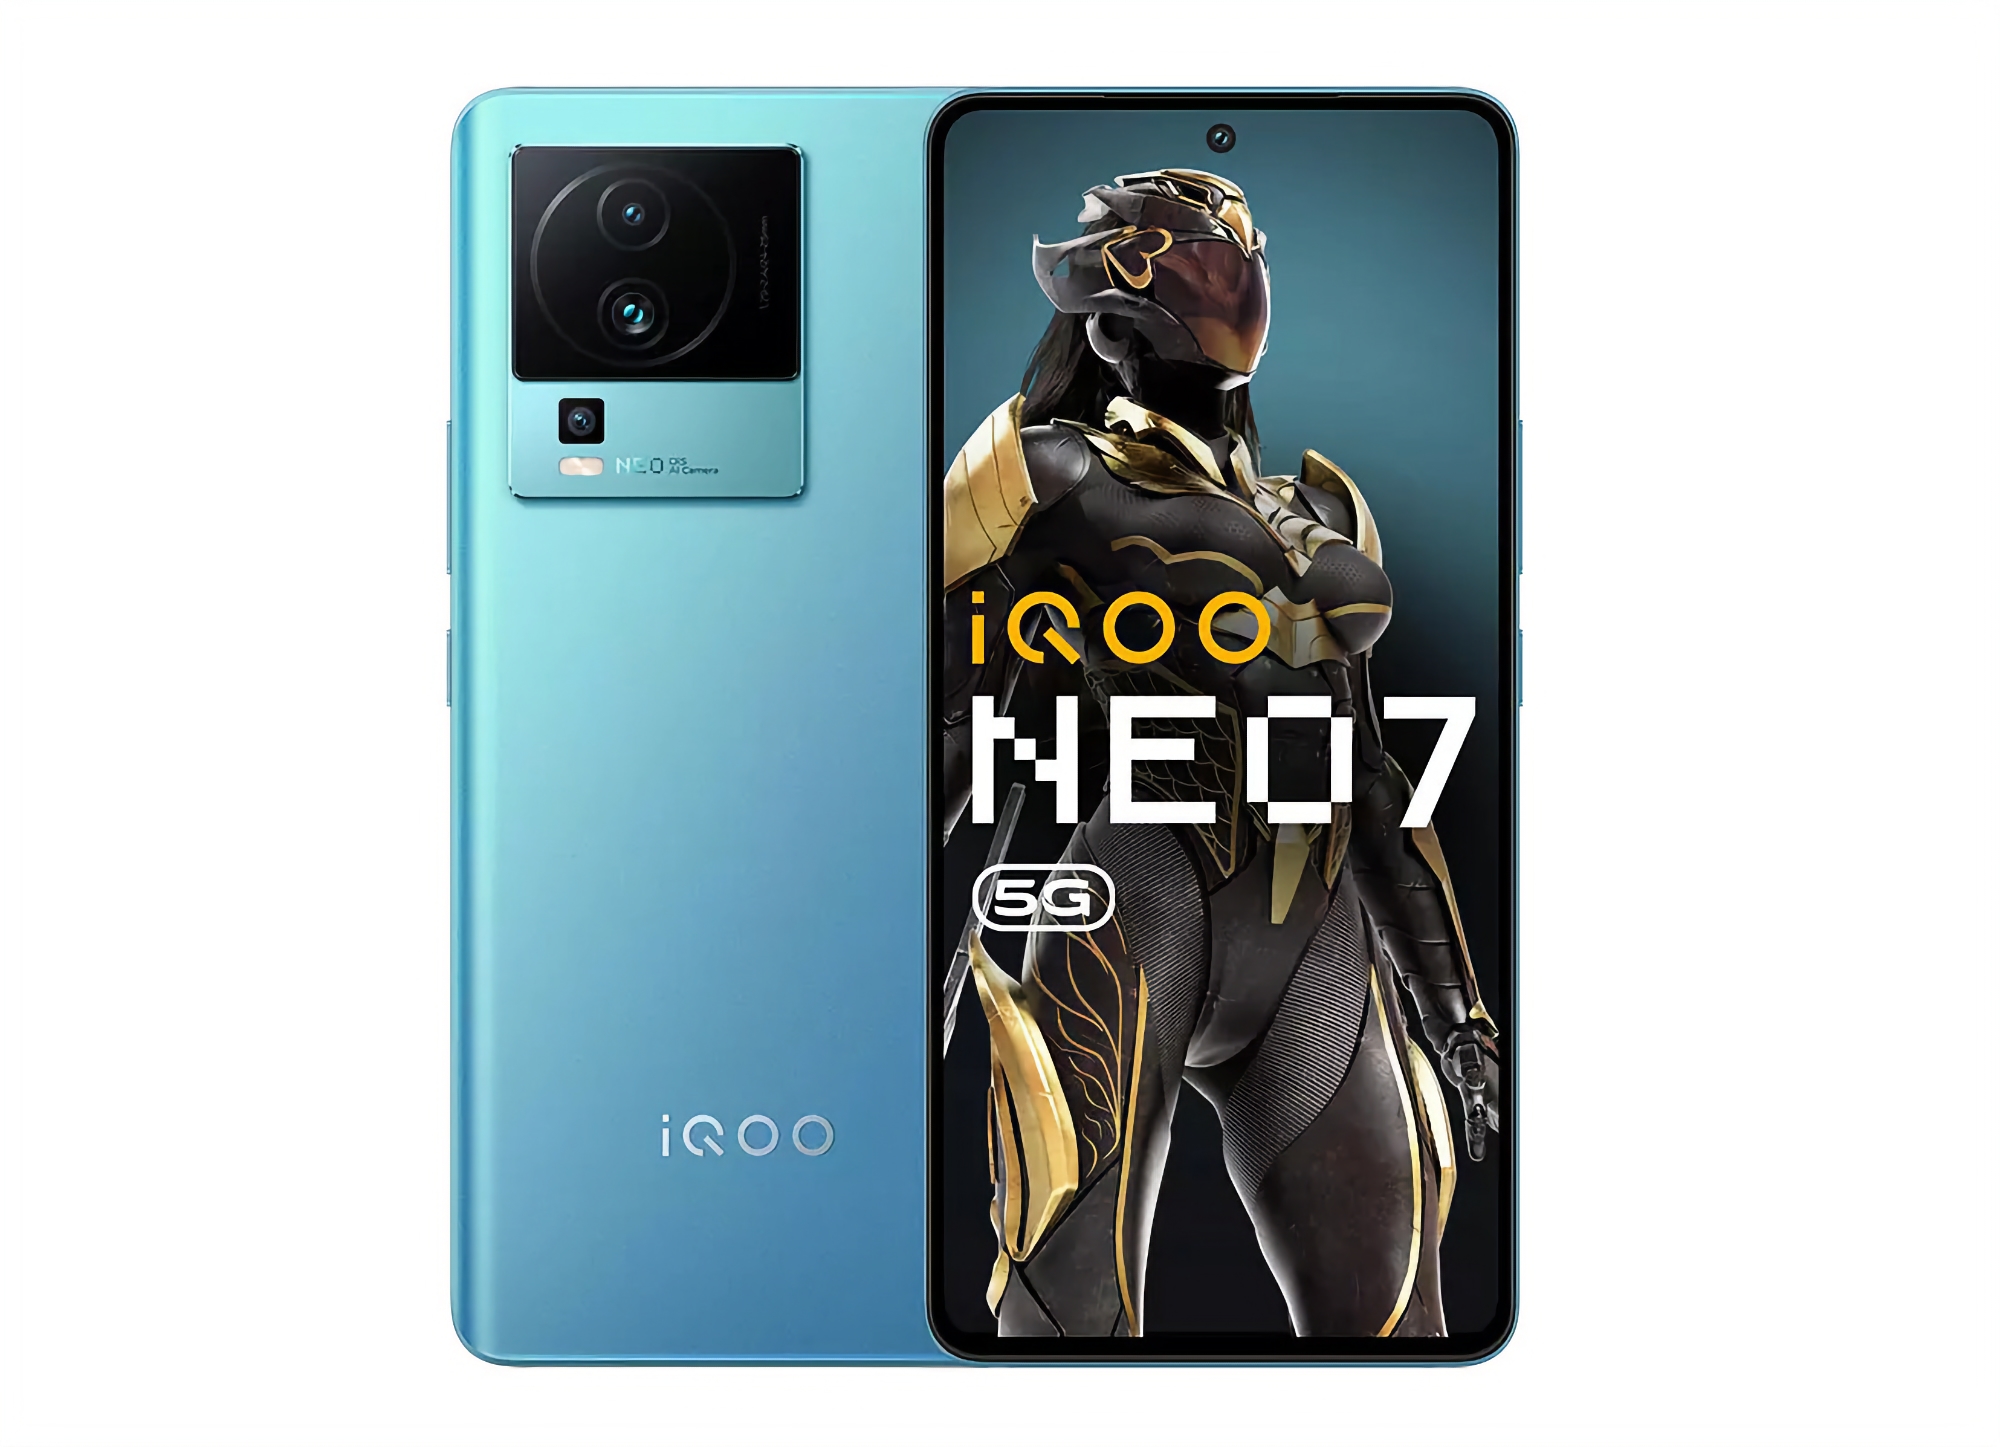 vivo prezentuje iQOO Neo 7: ekran OLED 120Hz, układ MediaTek Dimensity 8200 i ładowarka 120W za 362$